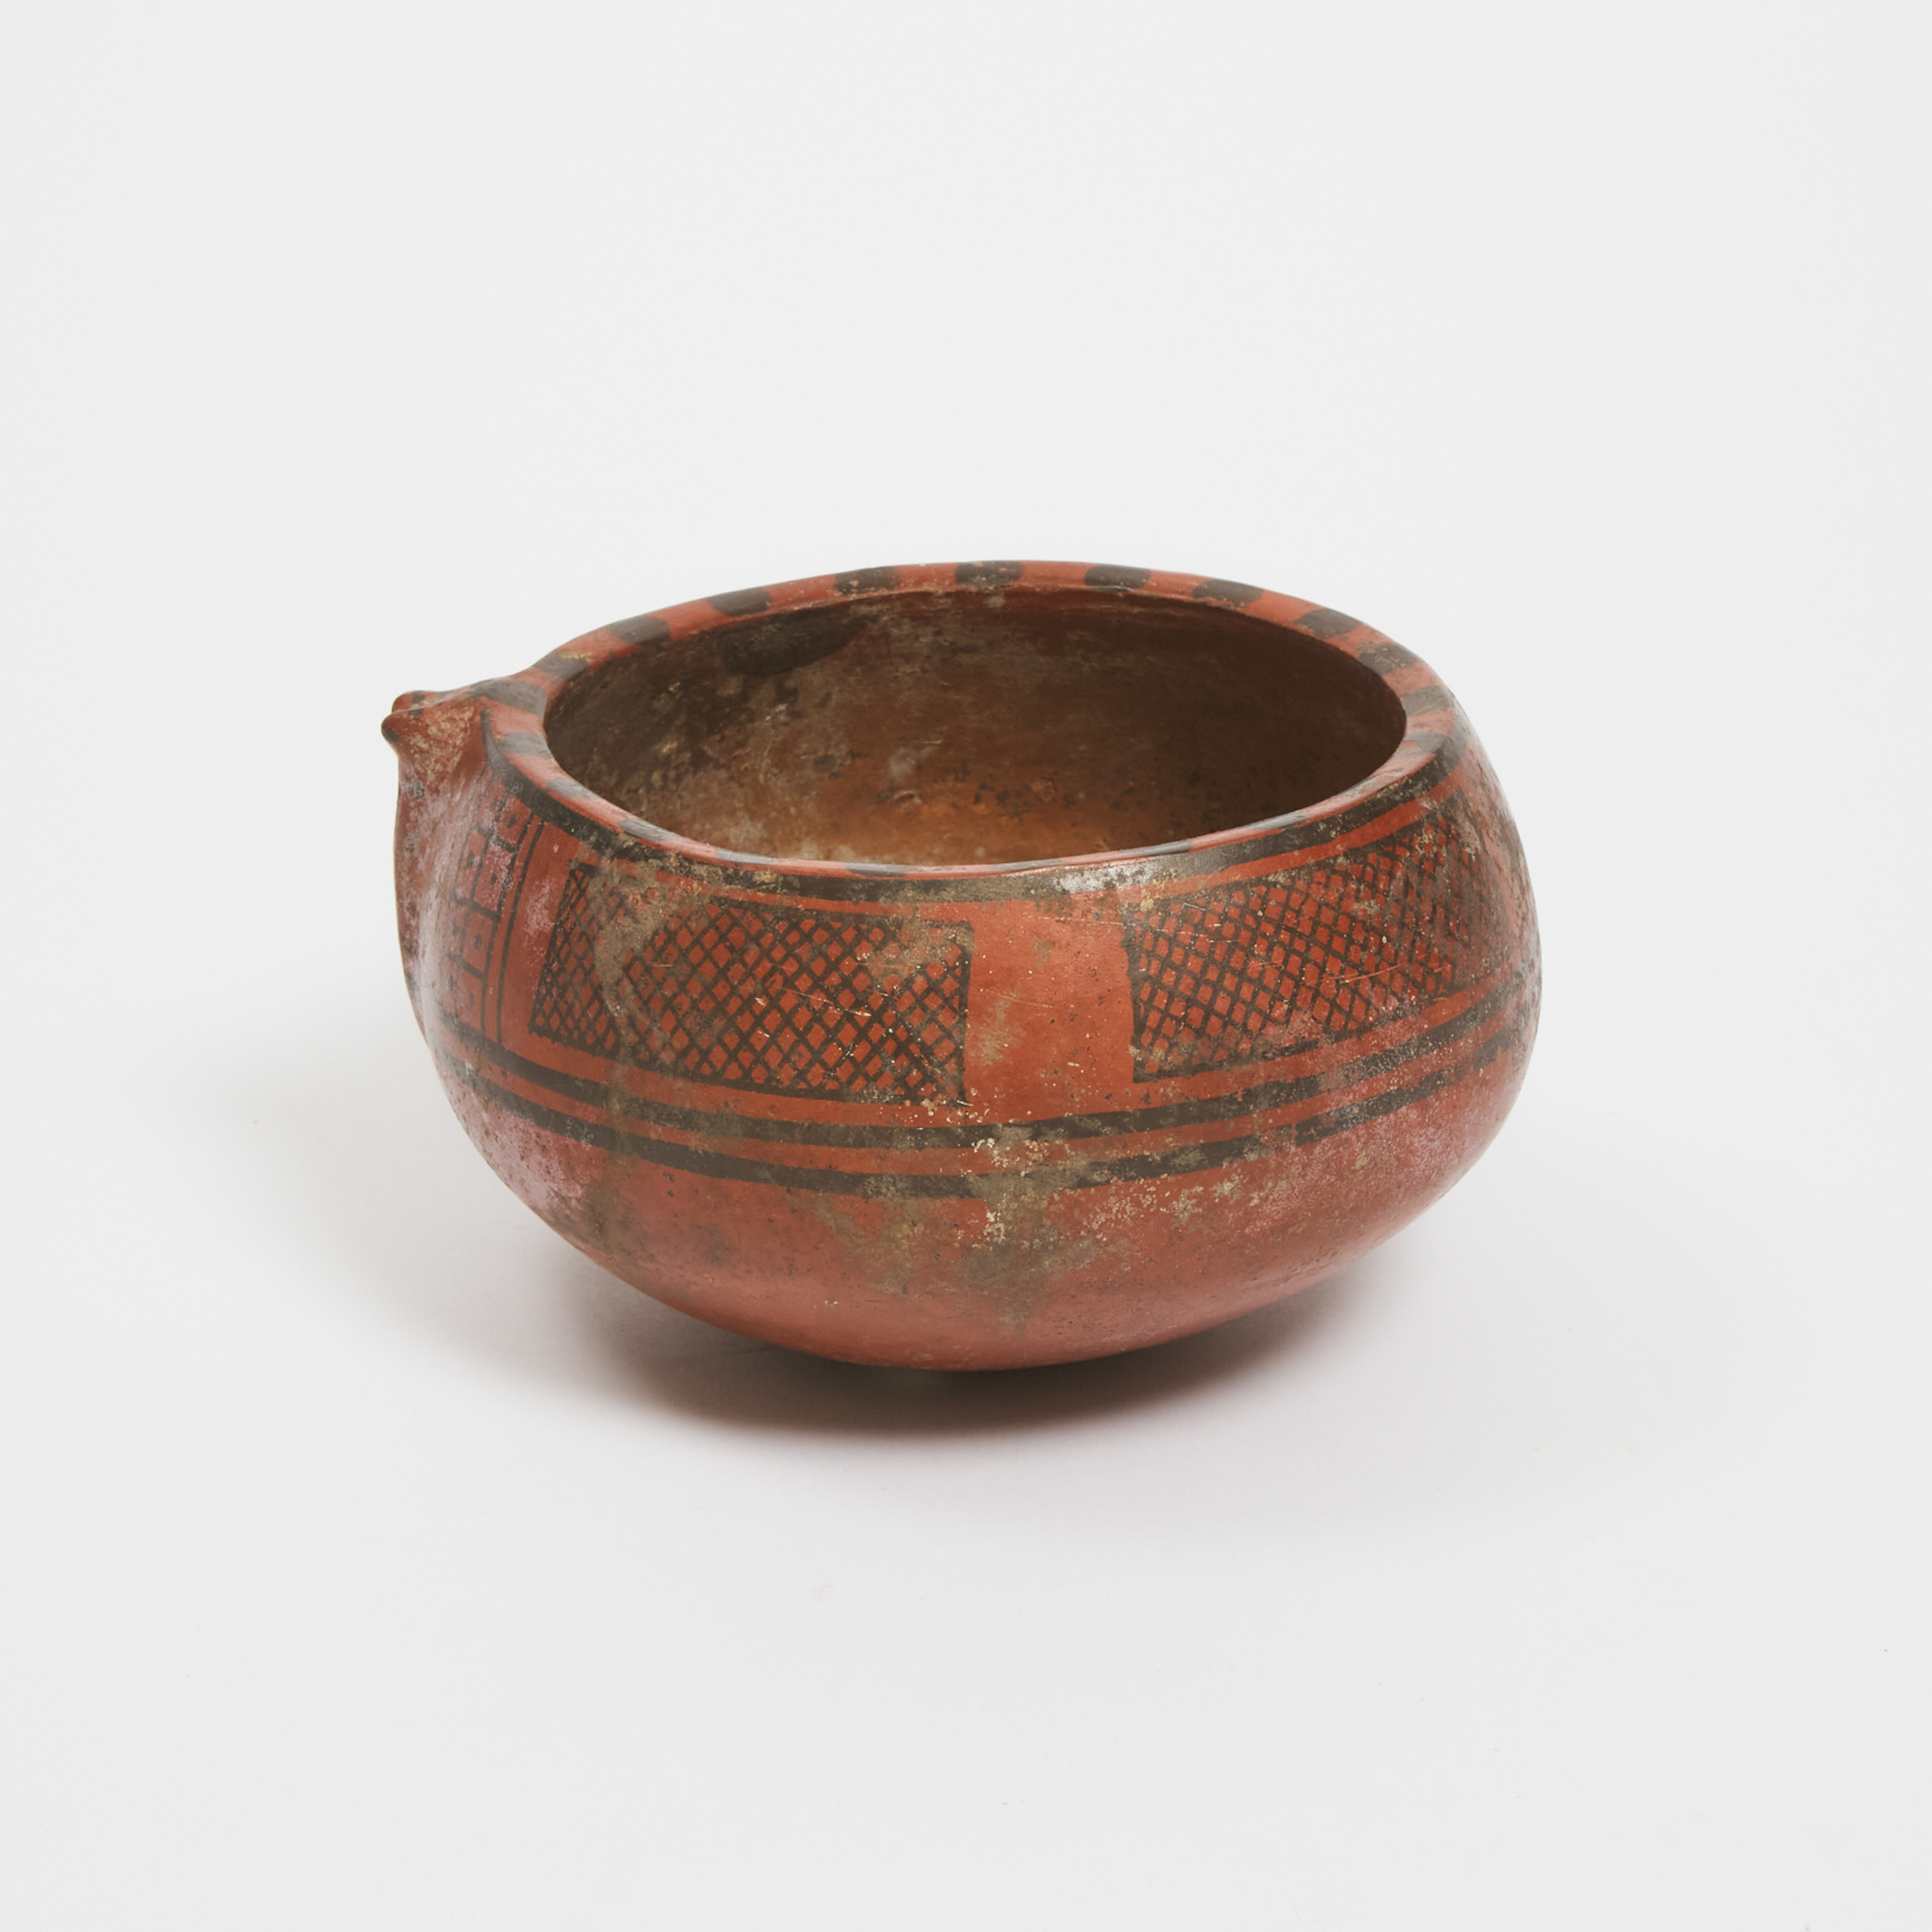 Pre-Columbian Redware Pottery Bowl